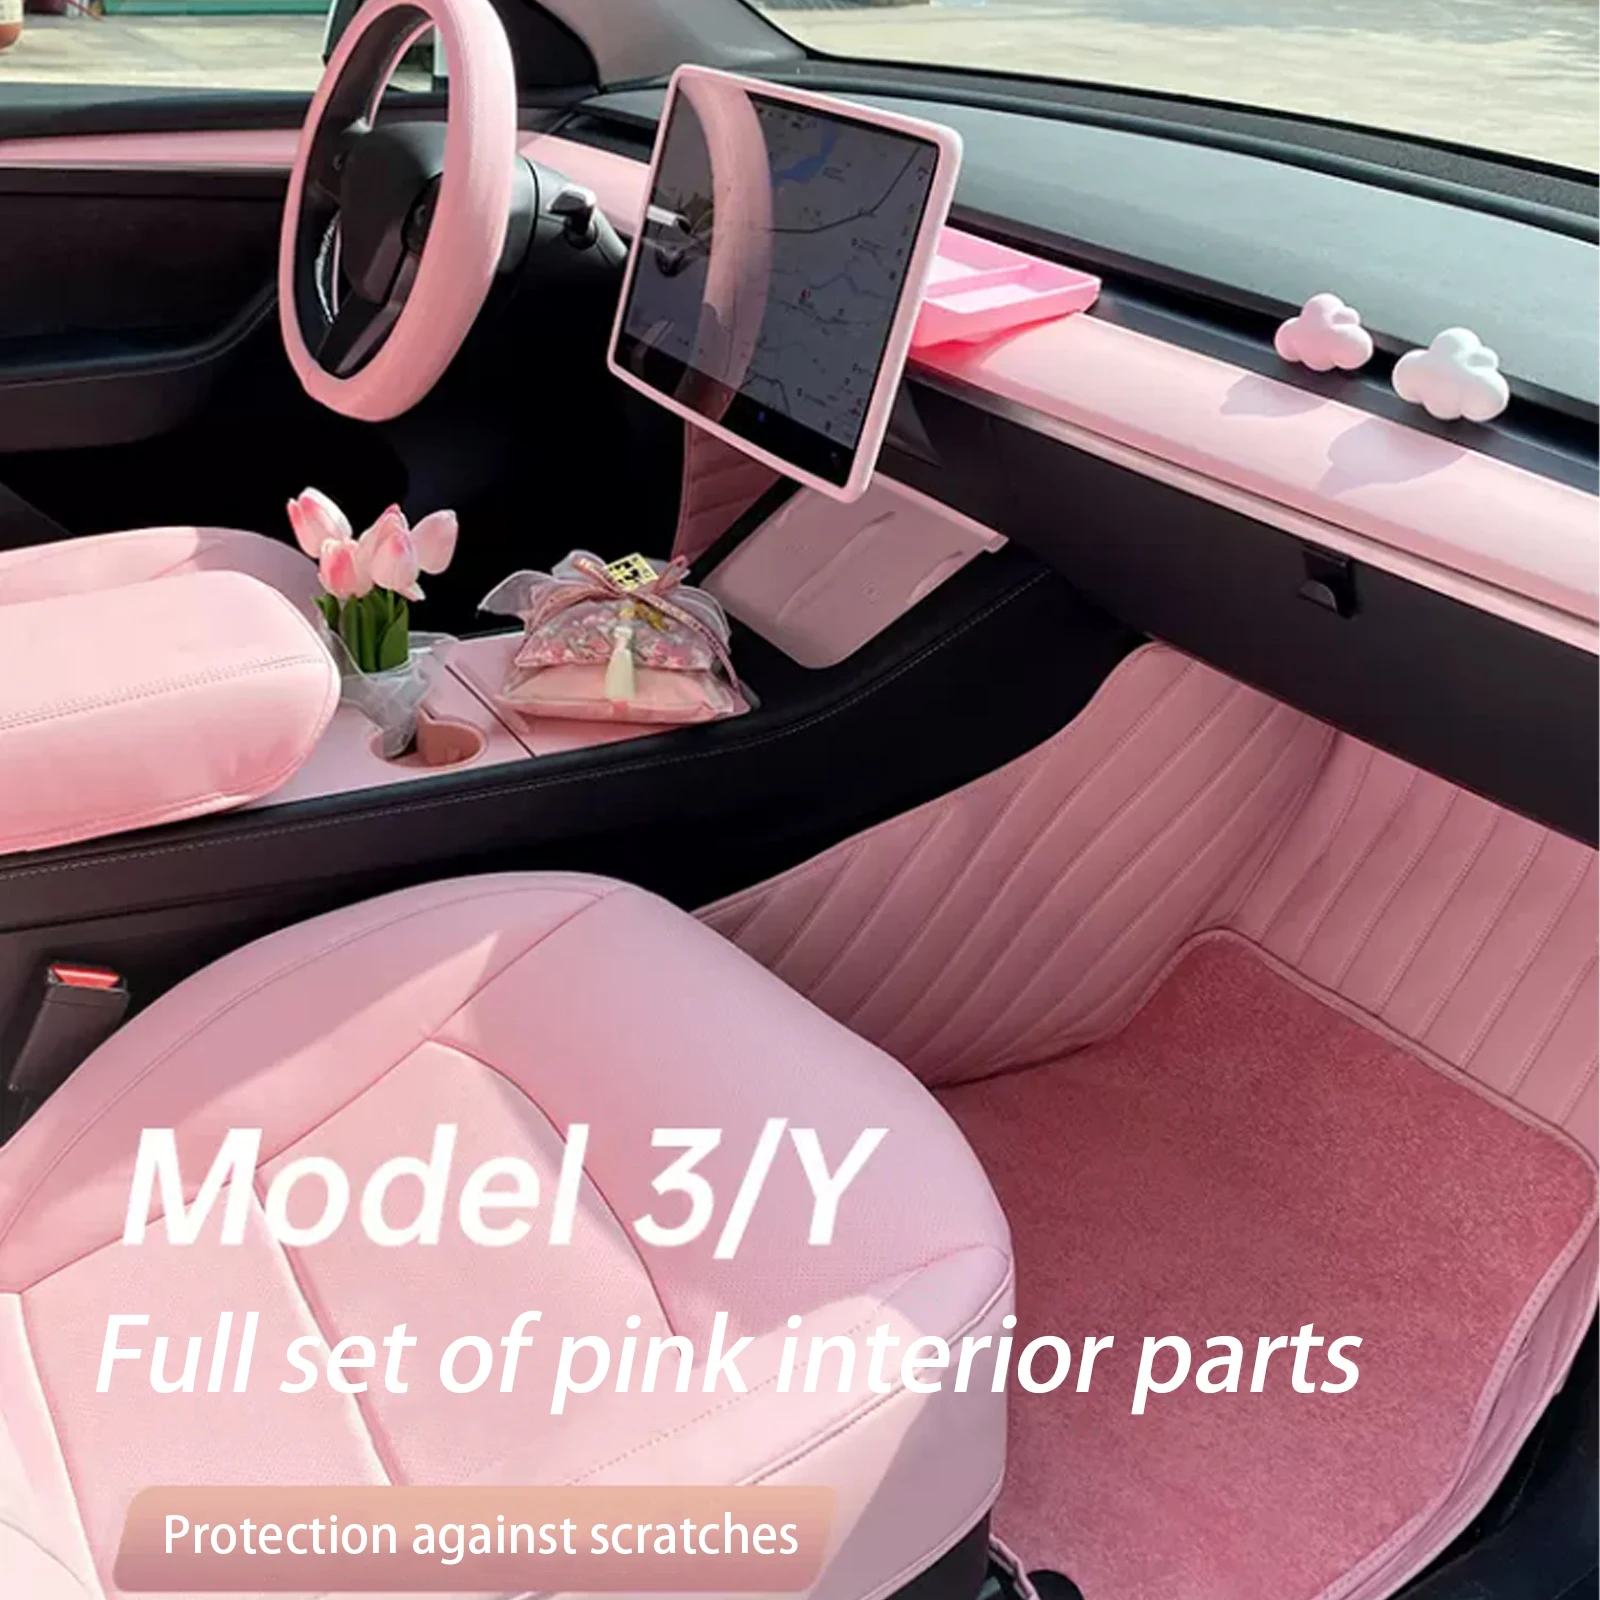 

Розовая центральная консоль Tesla Model 3 Y, контейнер для хранения, защитная отделка, боковая крышка для экрана рулевого колеса, подлокотник, ограничитель для чашки с водой